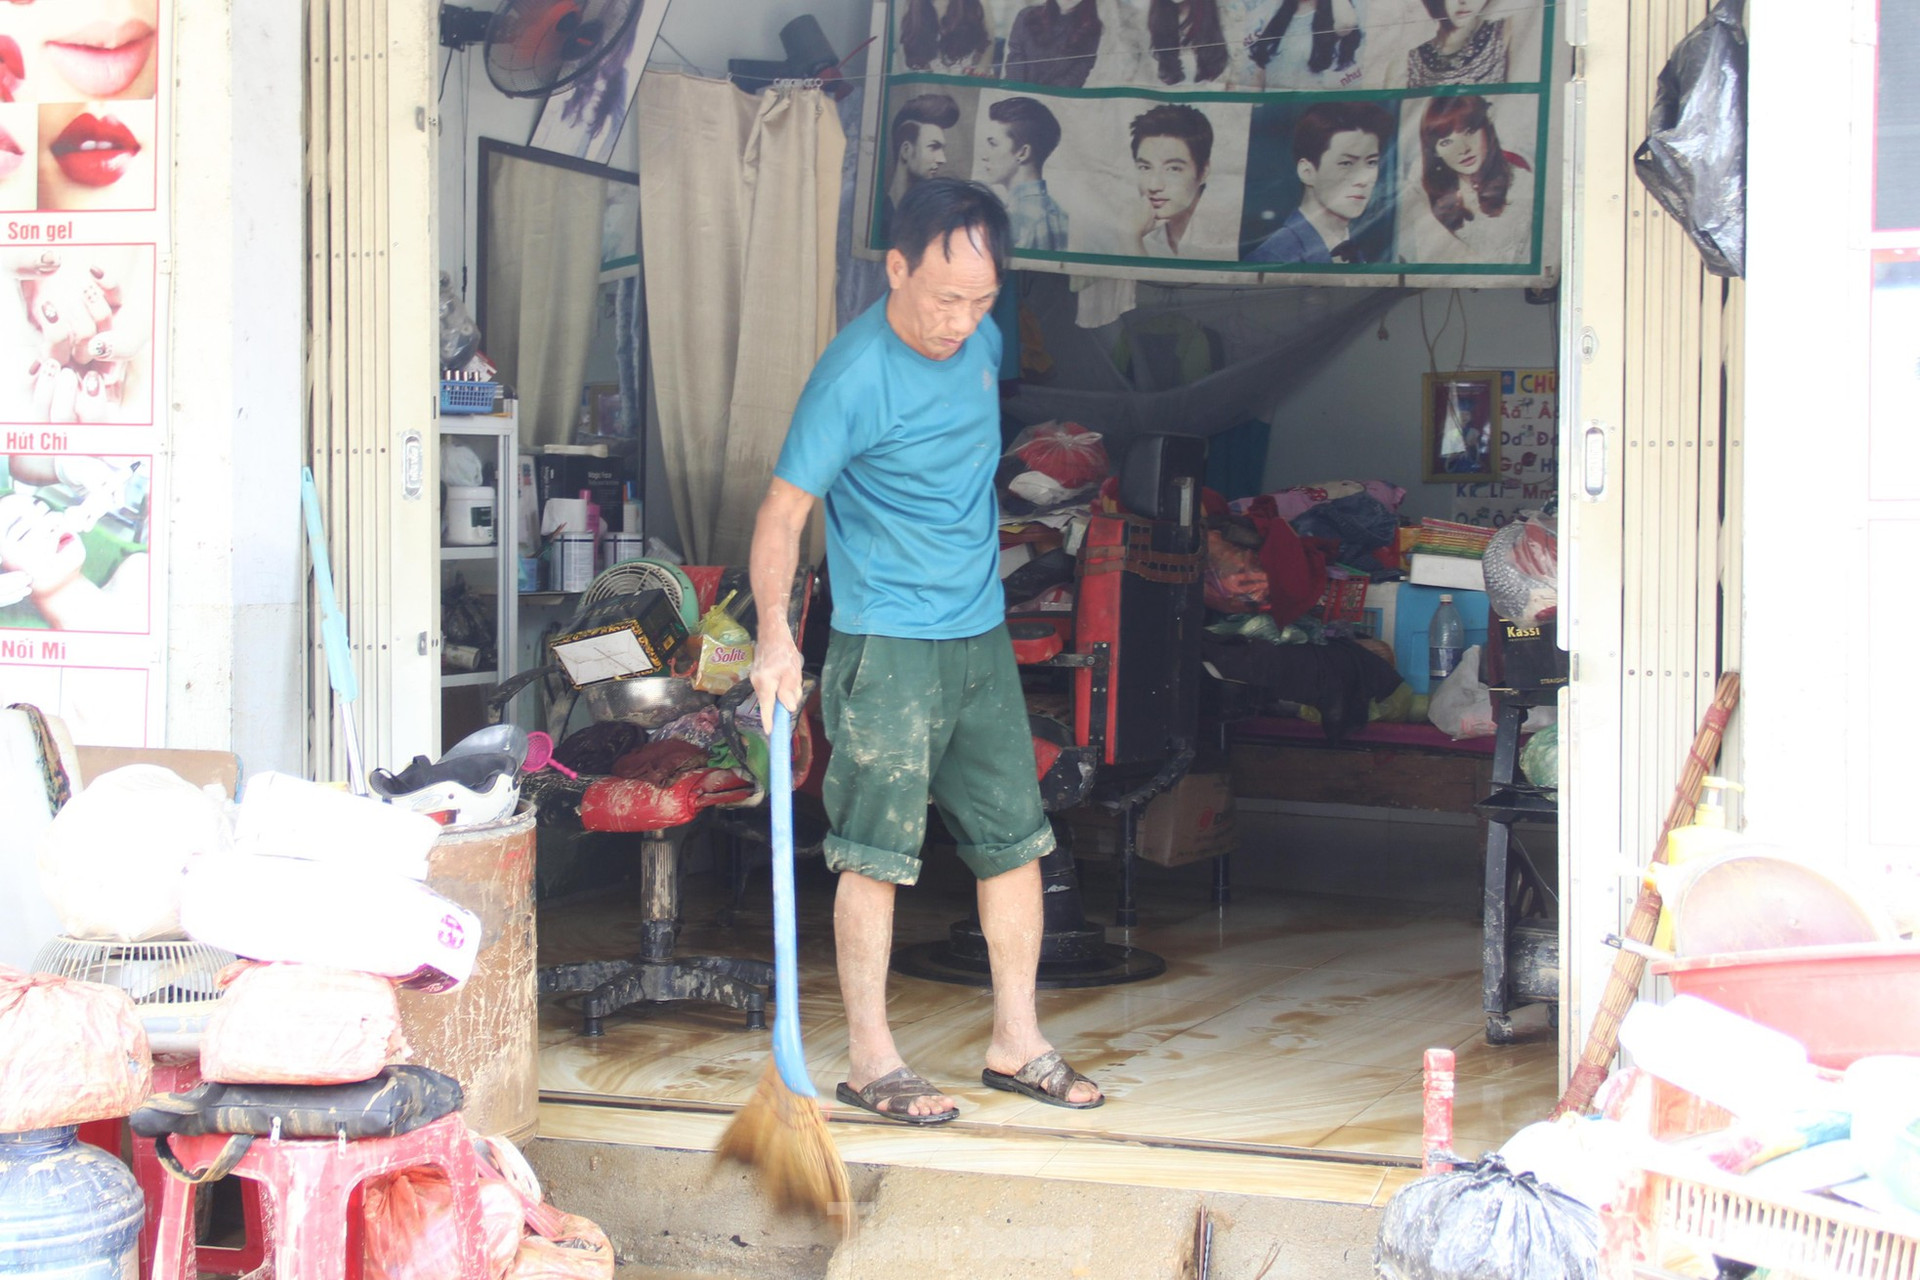 Thức xuyên đêm lo lắng, người dân Đà Nẵng lại tất bật dọn dẹp nhà cửa sau mưa ngập lịch sử ảnh 4